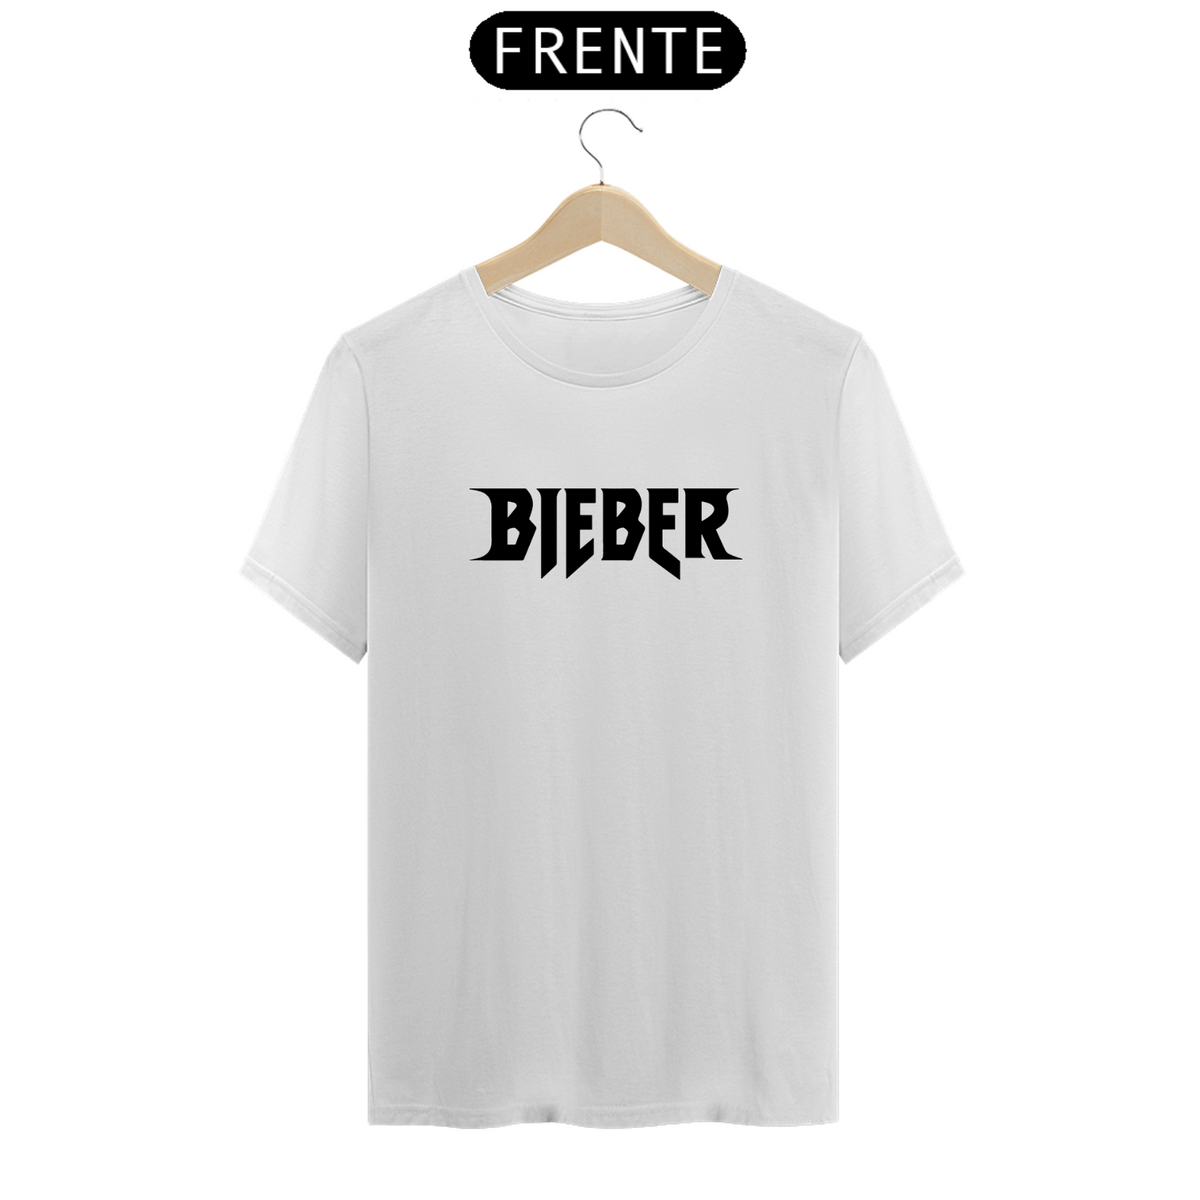 Nome do produto: Camiseta Unissex - Justin Bieber 